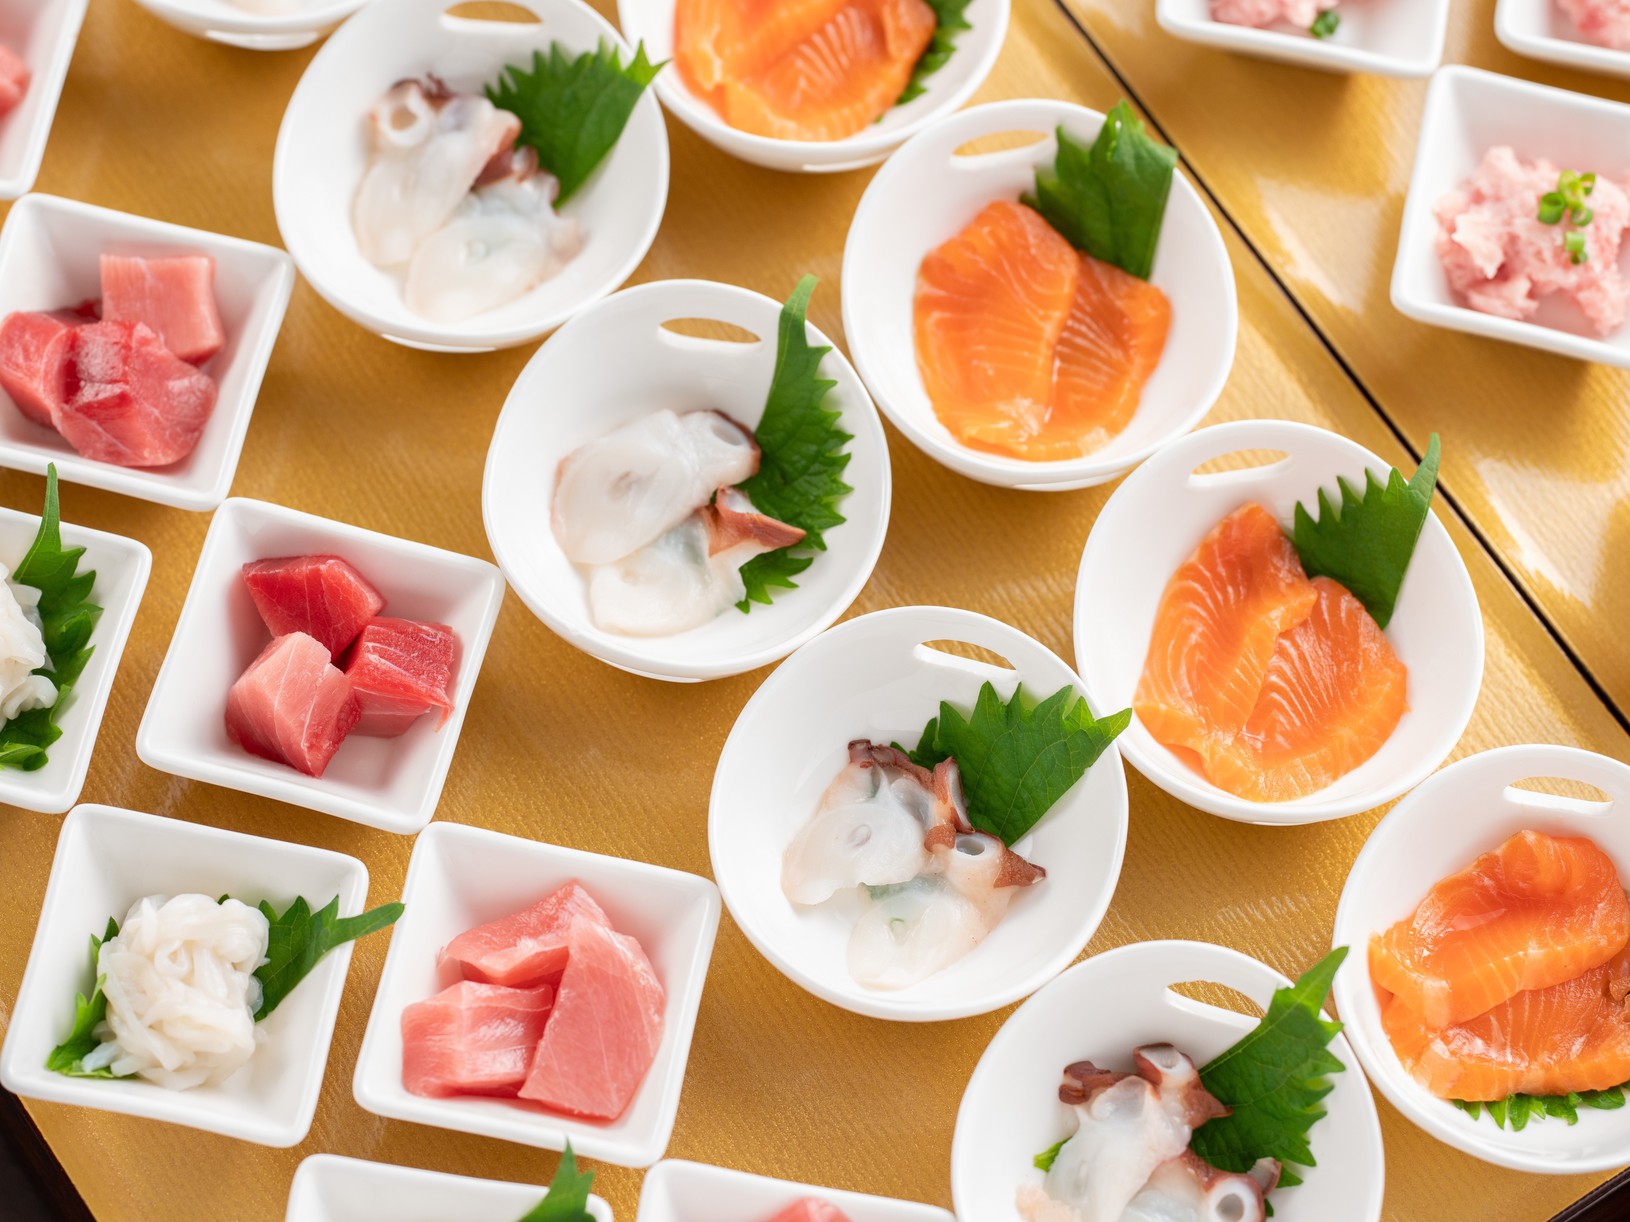 【海鮮小鉢】まぐろ、タコ、サーモン…;など新鮮な海鮮をご用意